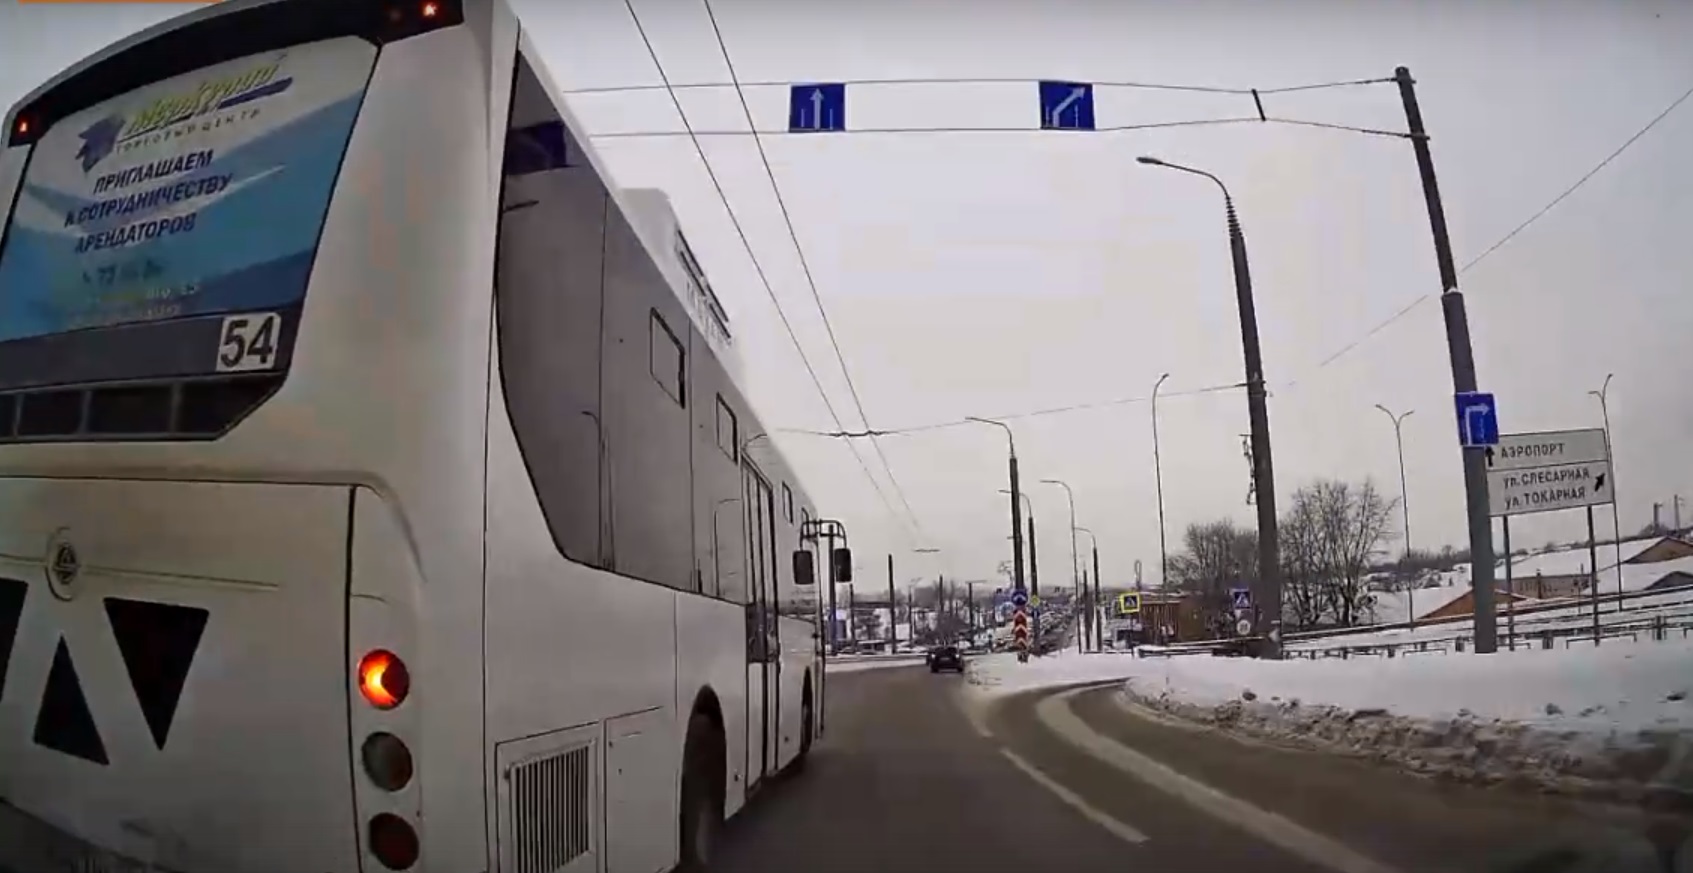 
		
		Два автобуса трижды подрезали легковушку в Пензе - видео
		
	